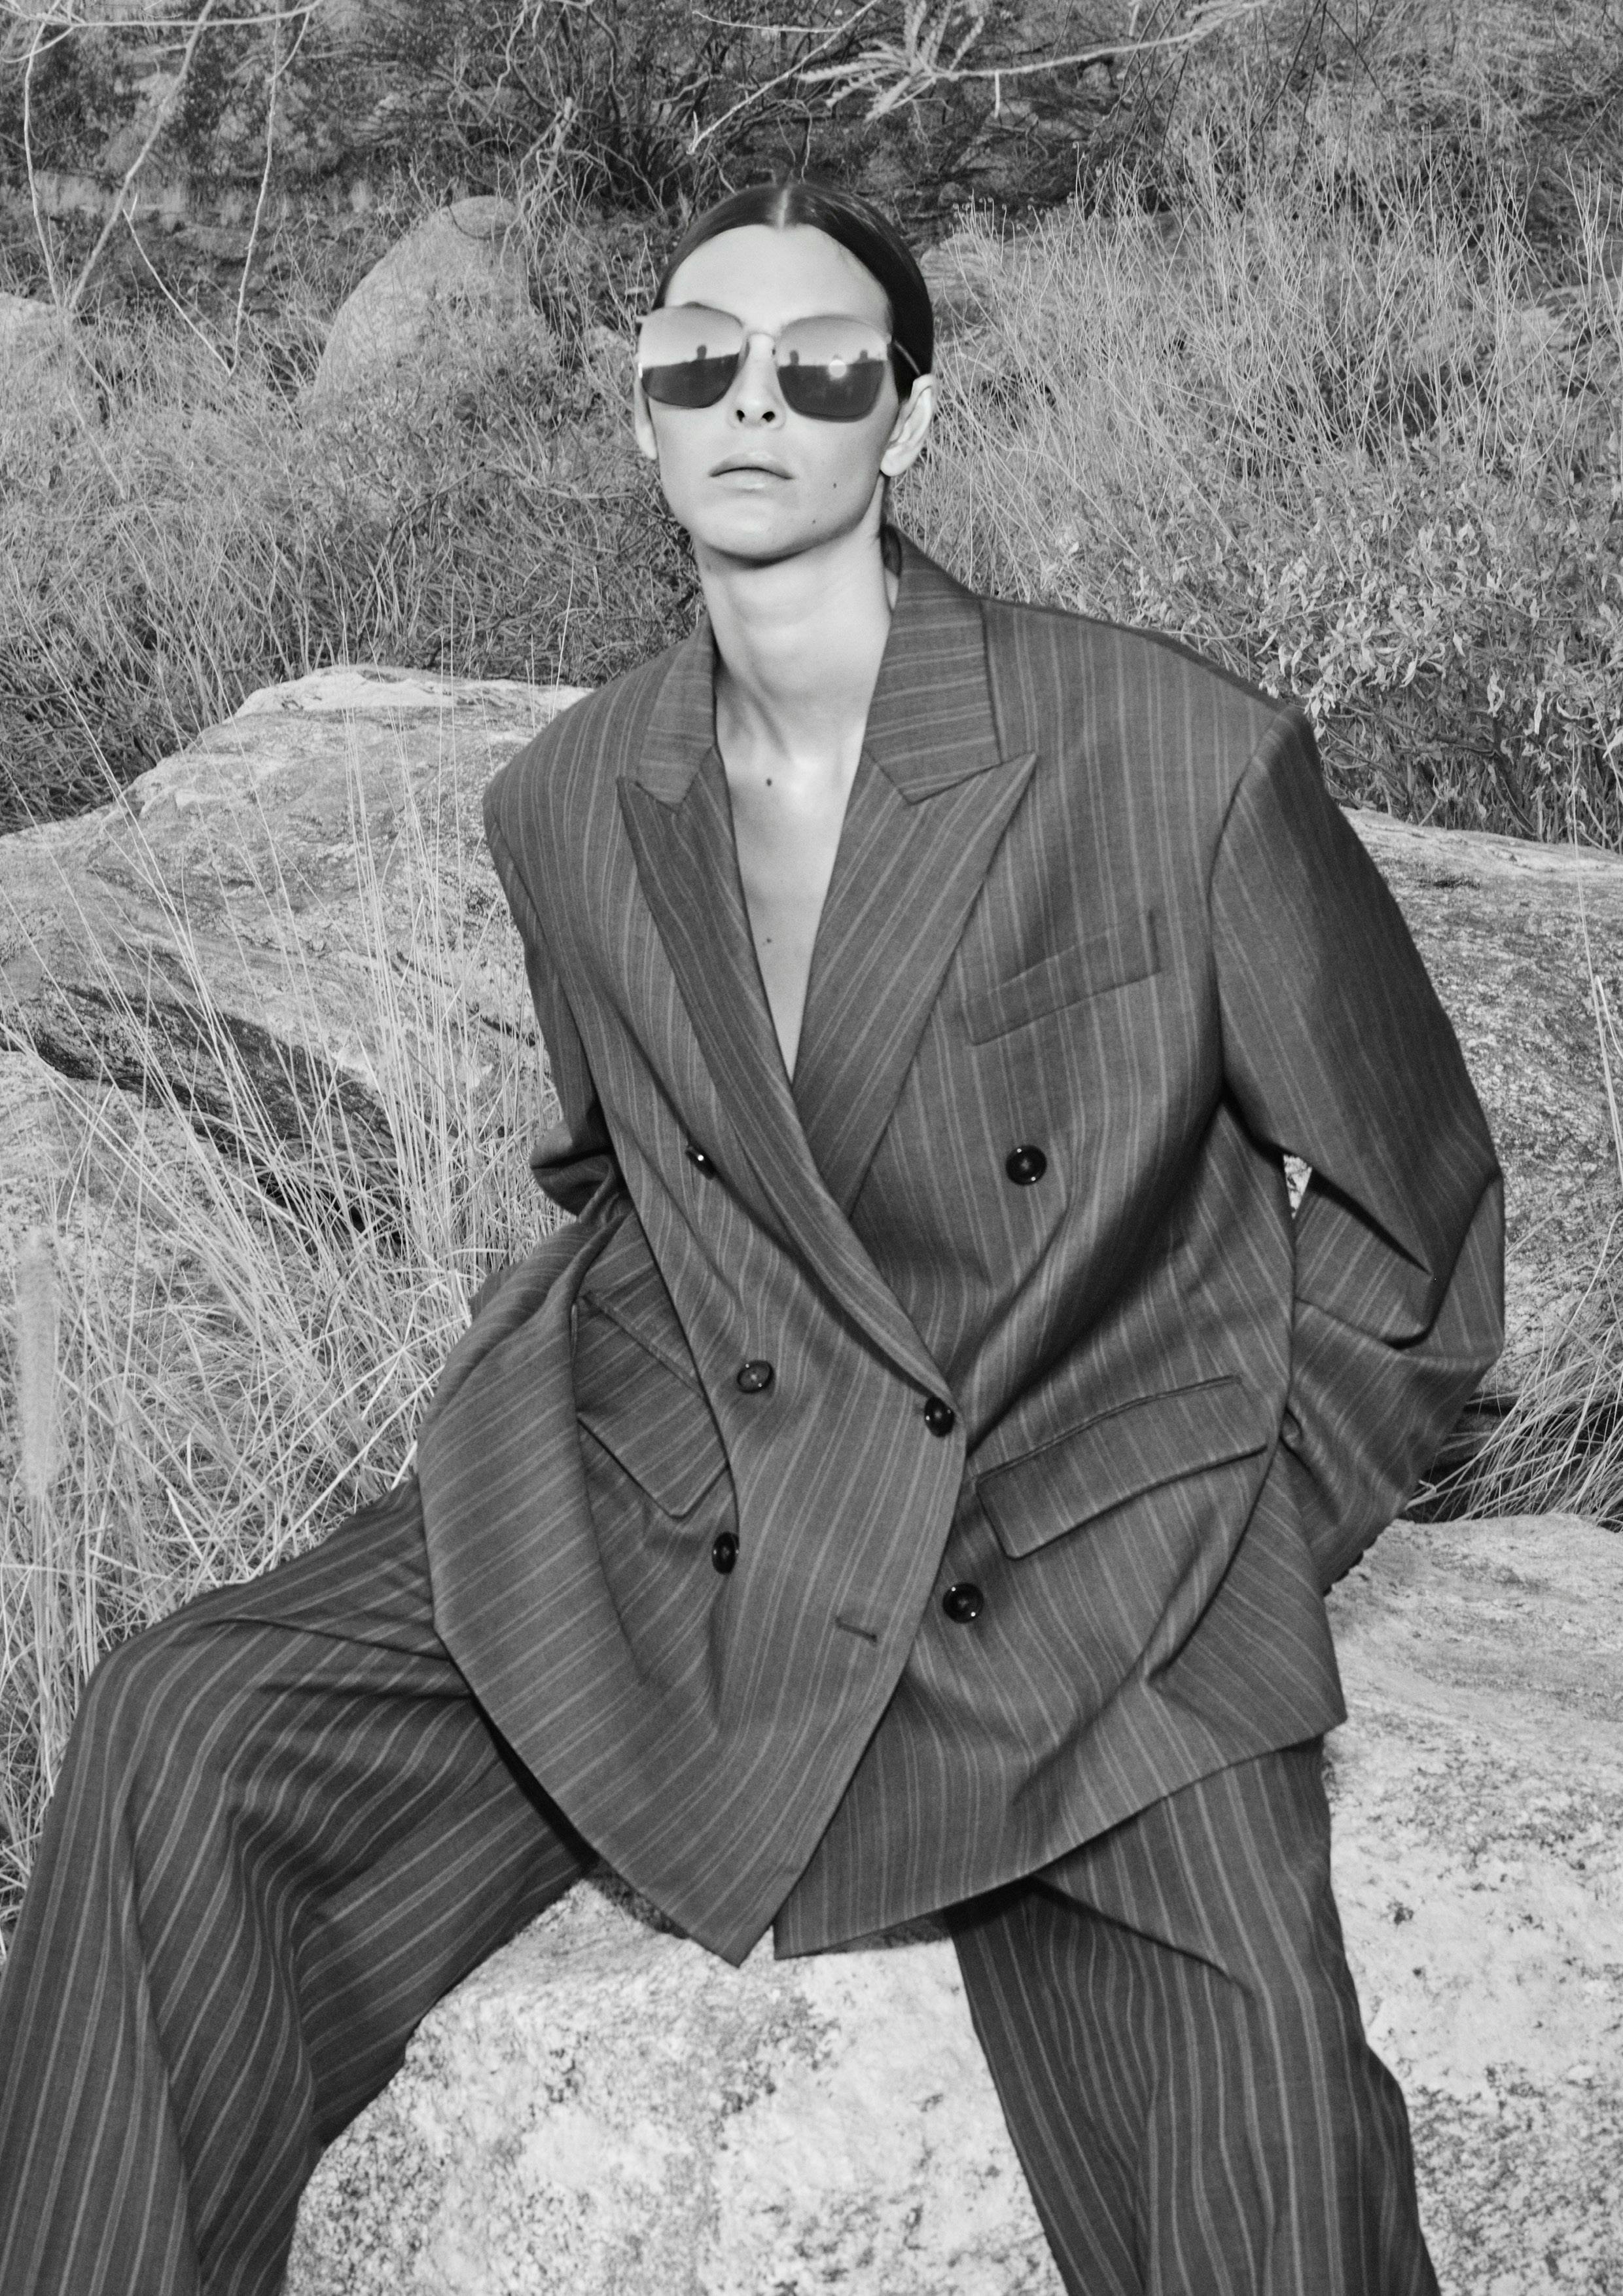 formal wear suit sunglasses person photography portrait coat jacket adult man